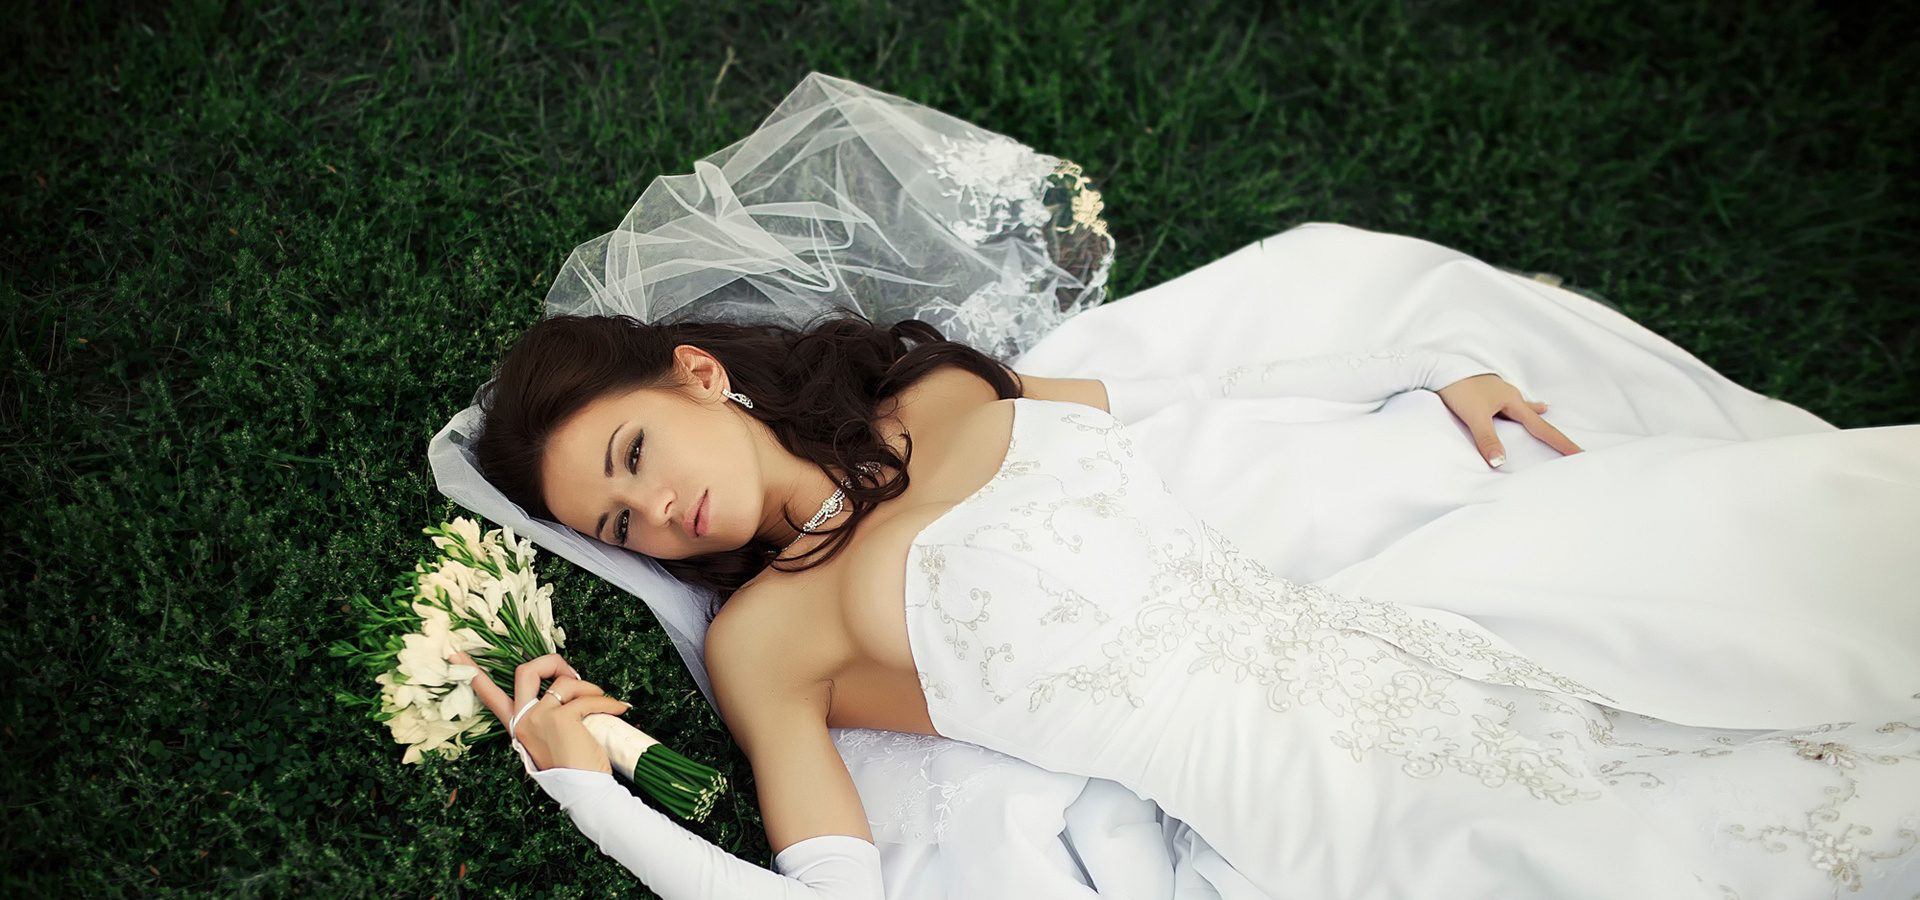 Какие ошибки может сделать невеста при подготовке к свадьбе?